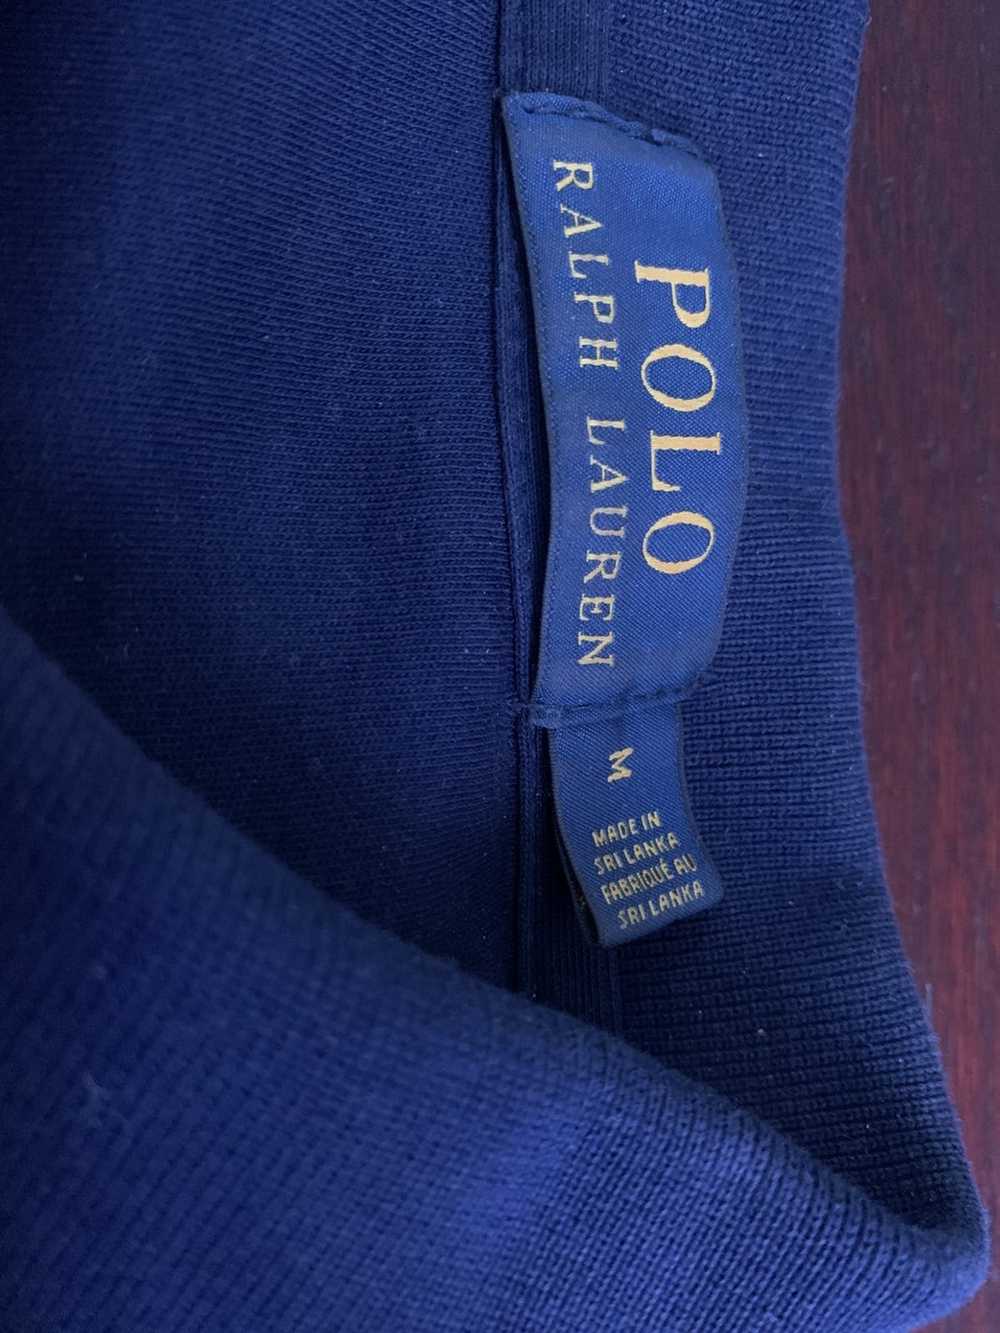 Polo Ralph Lauren Polo Ralph Lauren Shirt - image 2